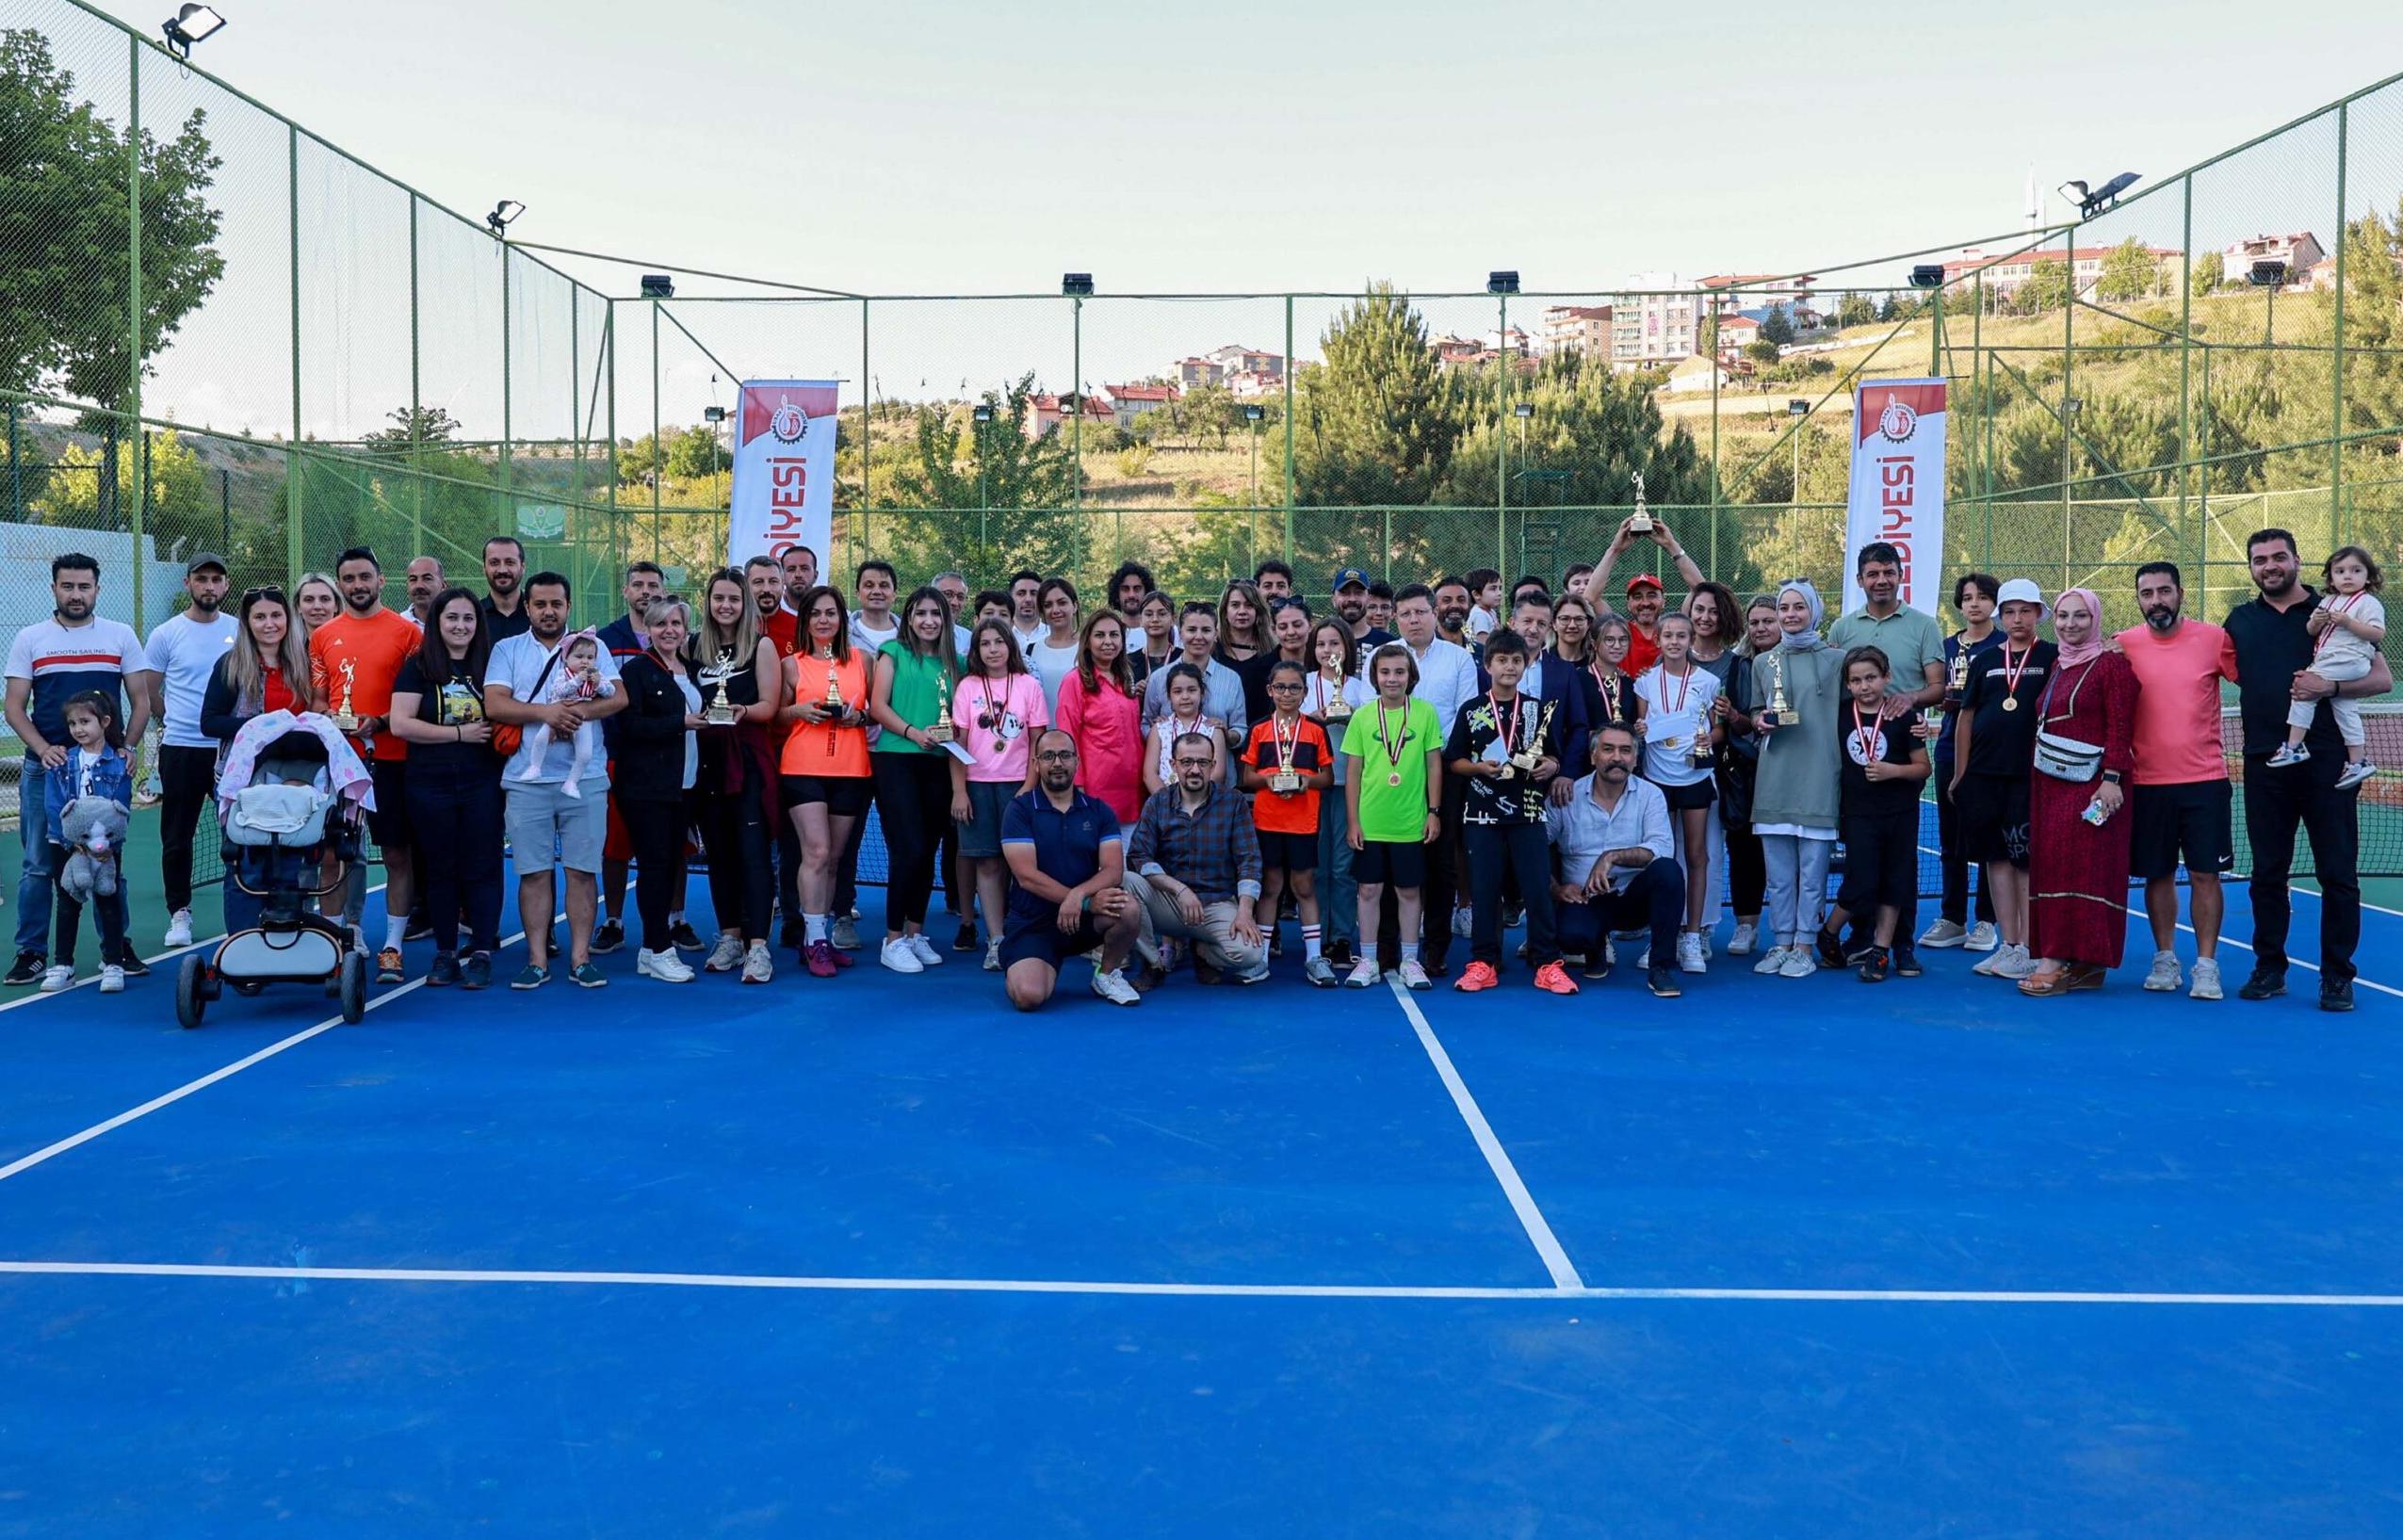 Uşak Belediyesi Tarafından Her Yıl Düzenli Olarak Yapılan Geleneksel Tenis Turnuvalarının Onuncusu Gerçekleşti.